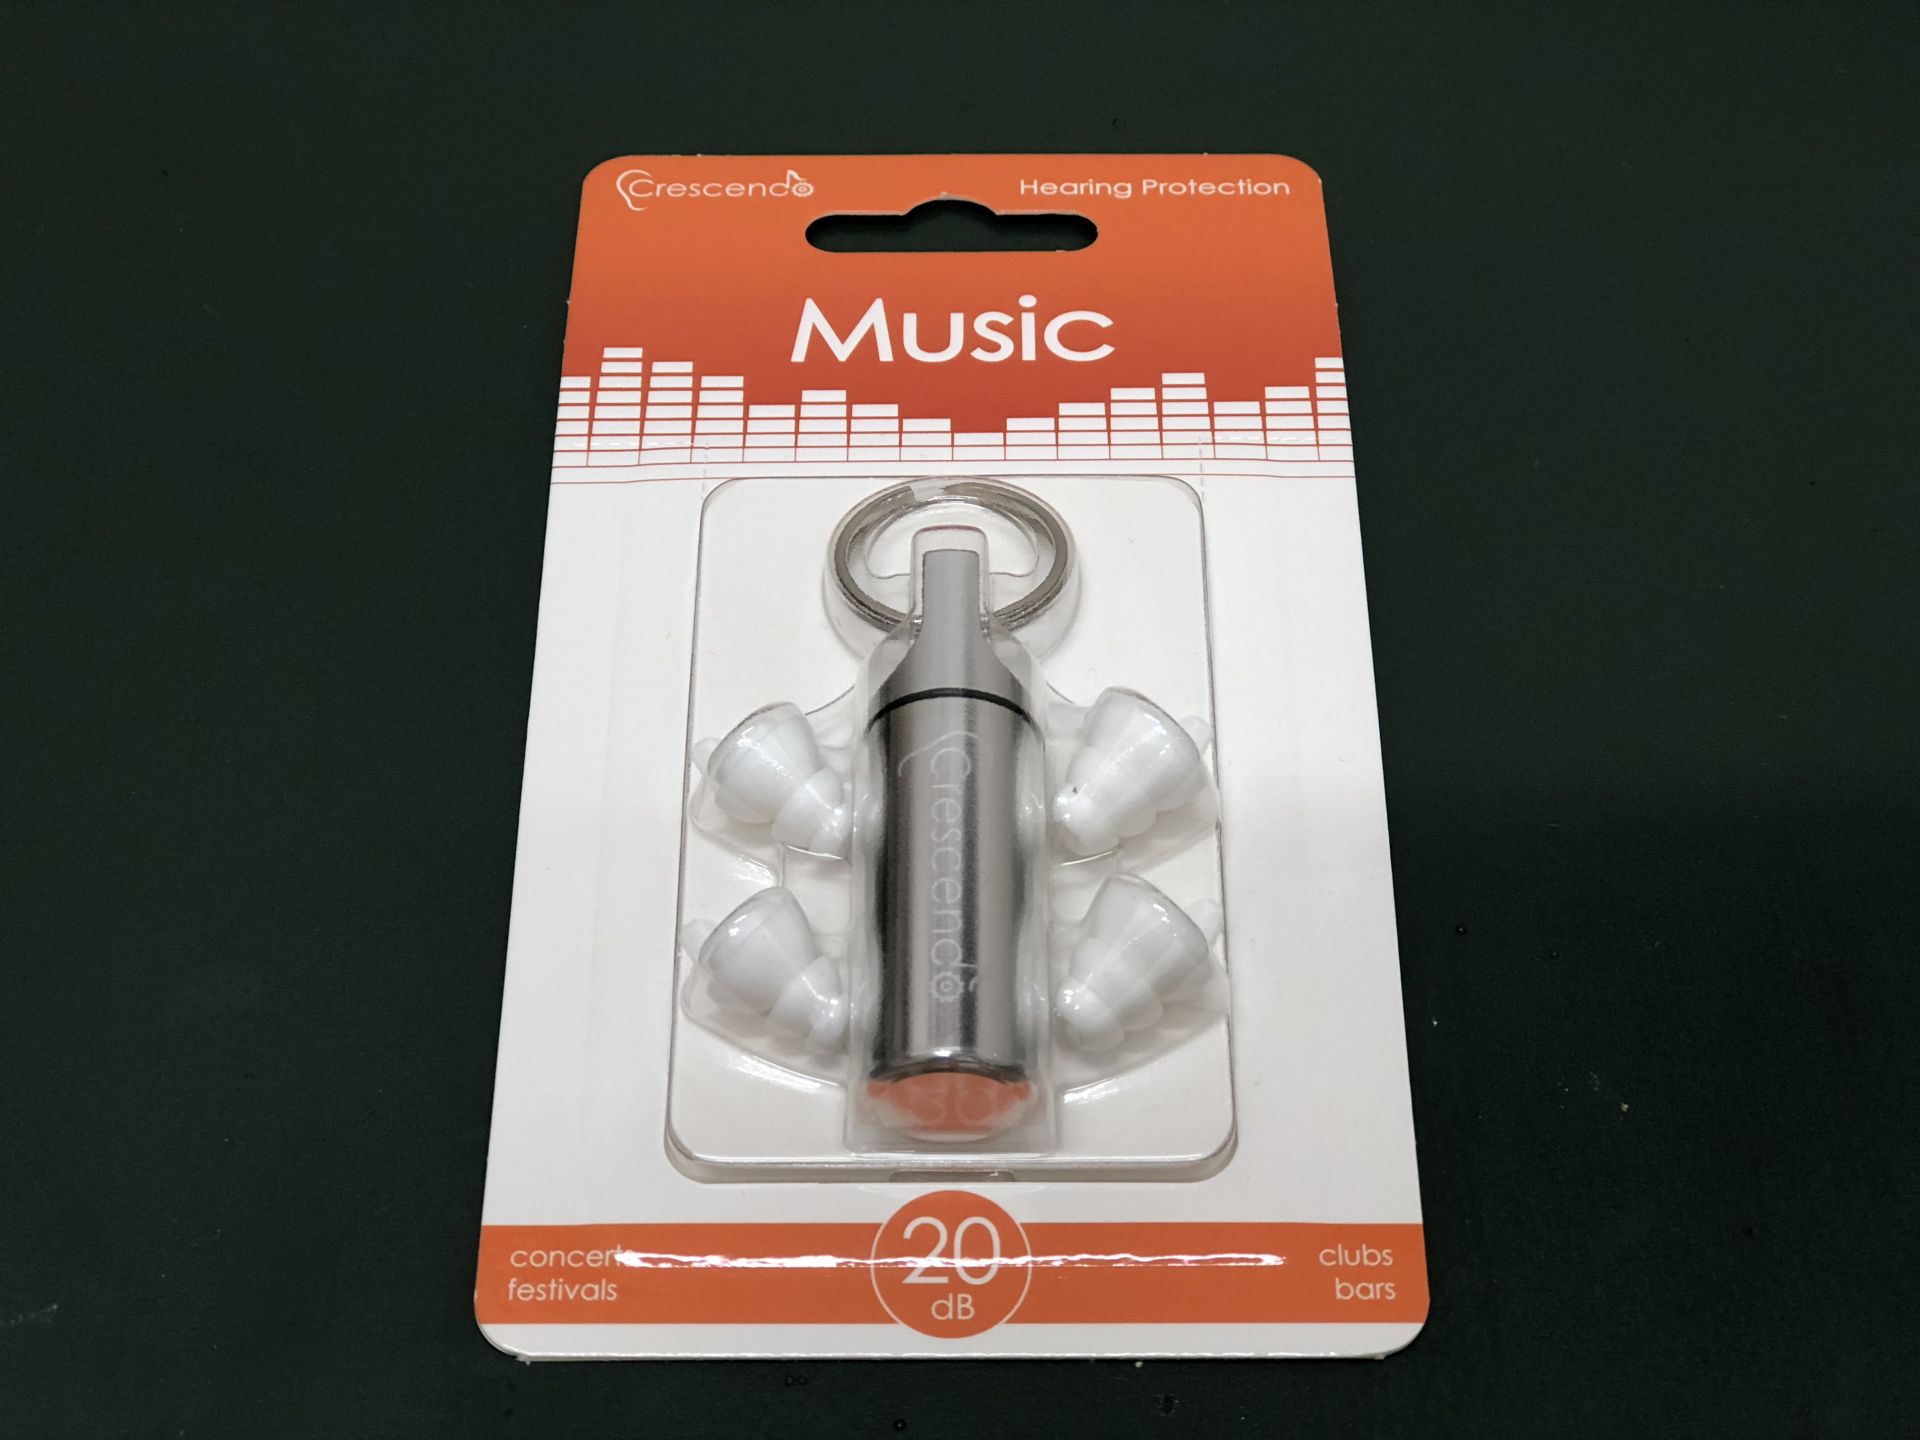 ドーム級コンサートイベントで重宝する「コンサート・ライヴ用耳栓」取り扱っております。